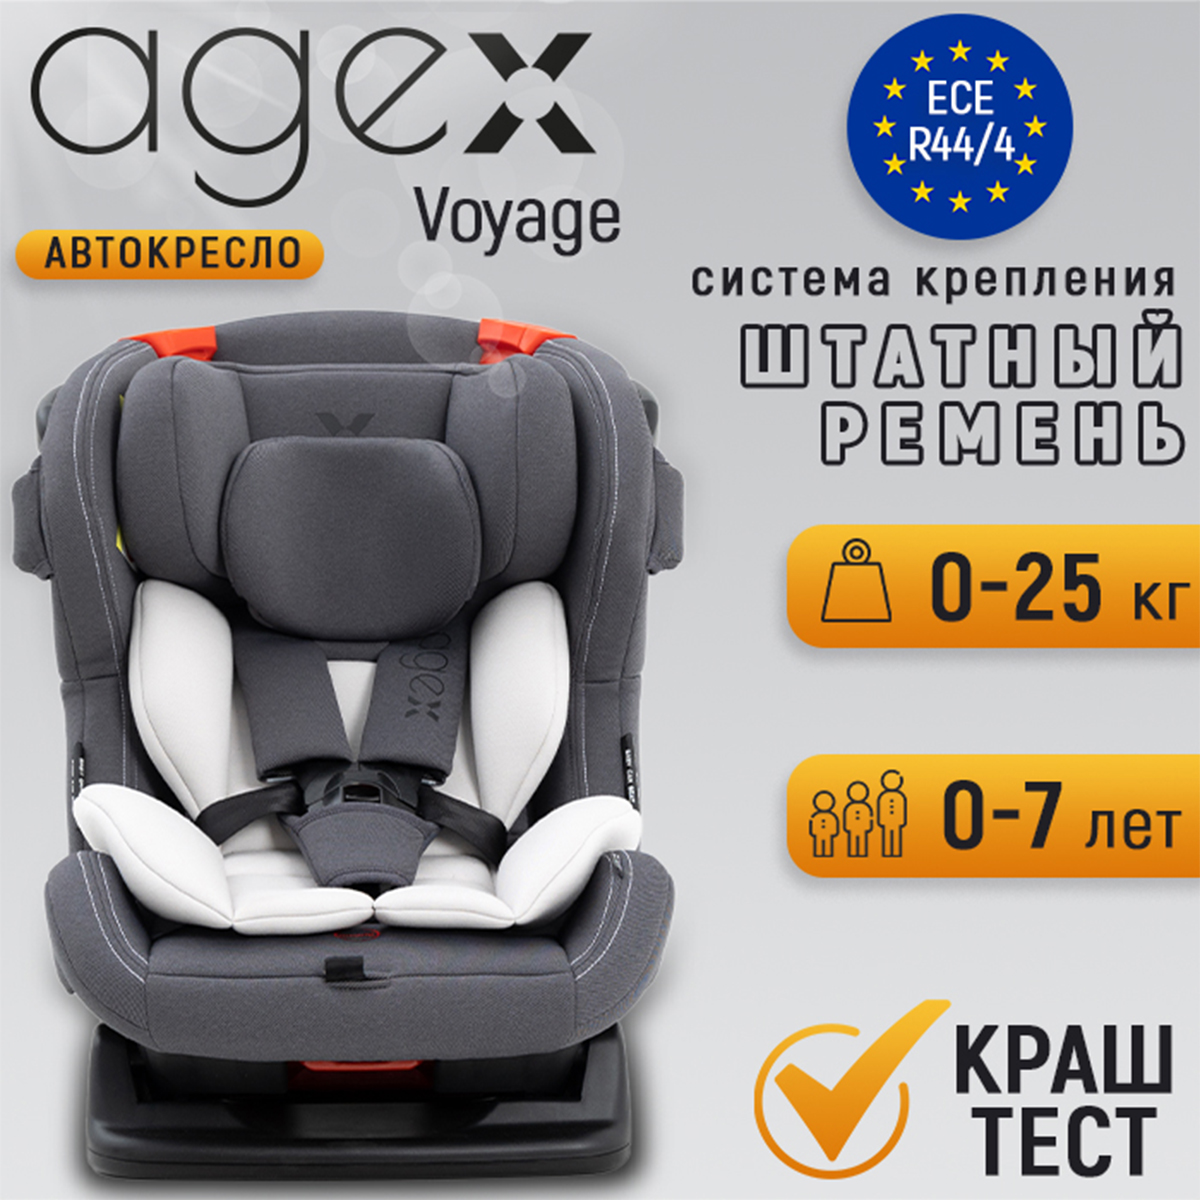 Автокресло agex Voyage - фото 1